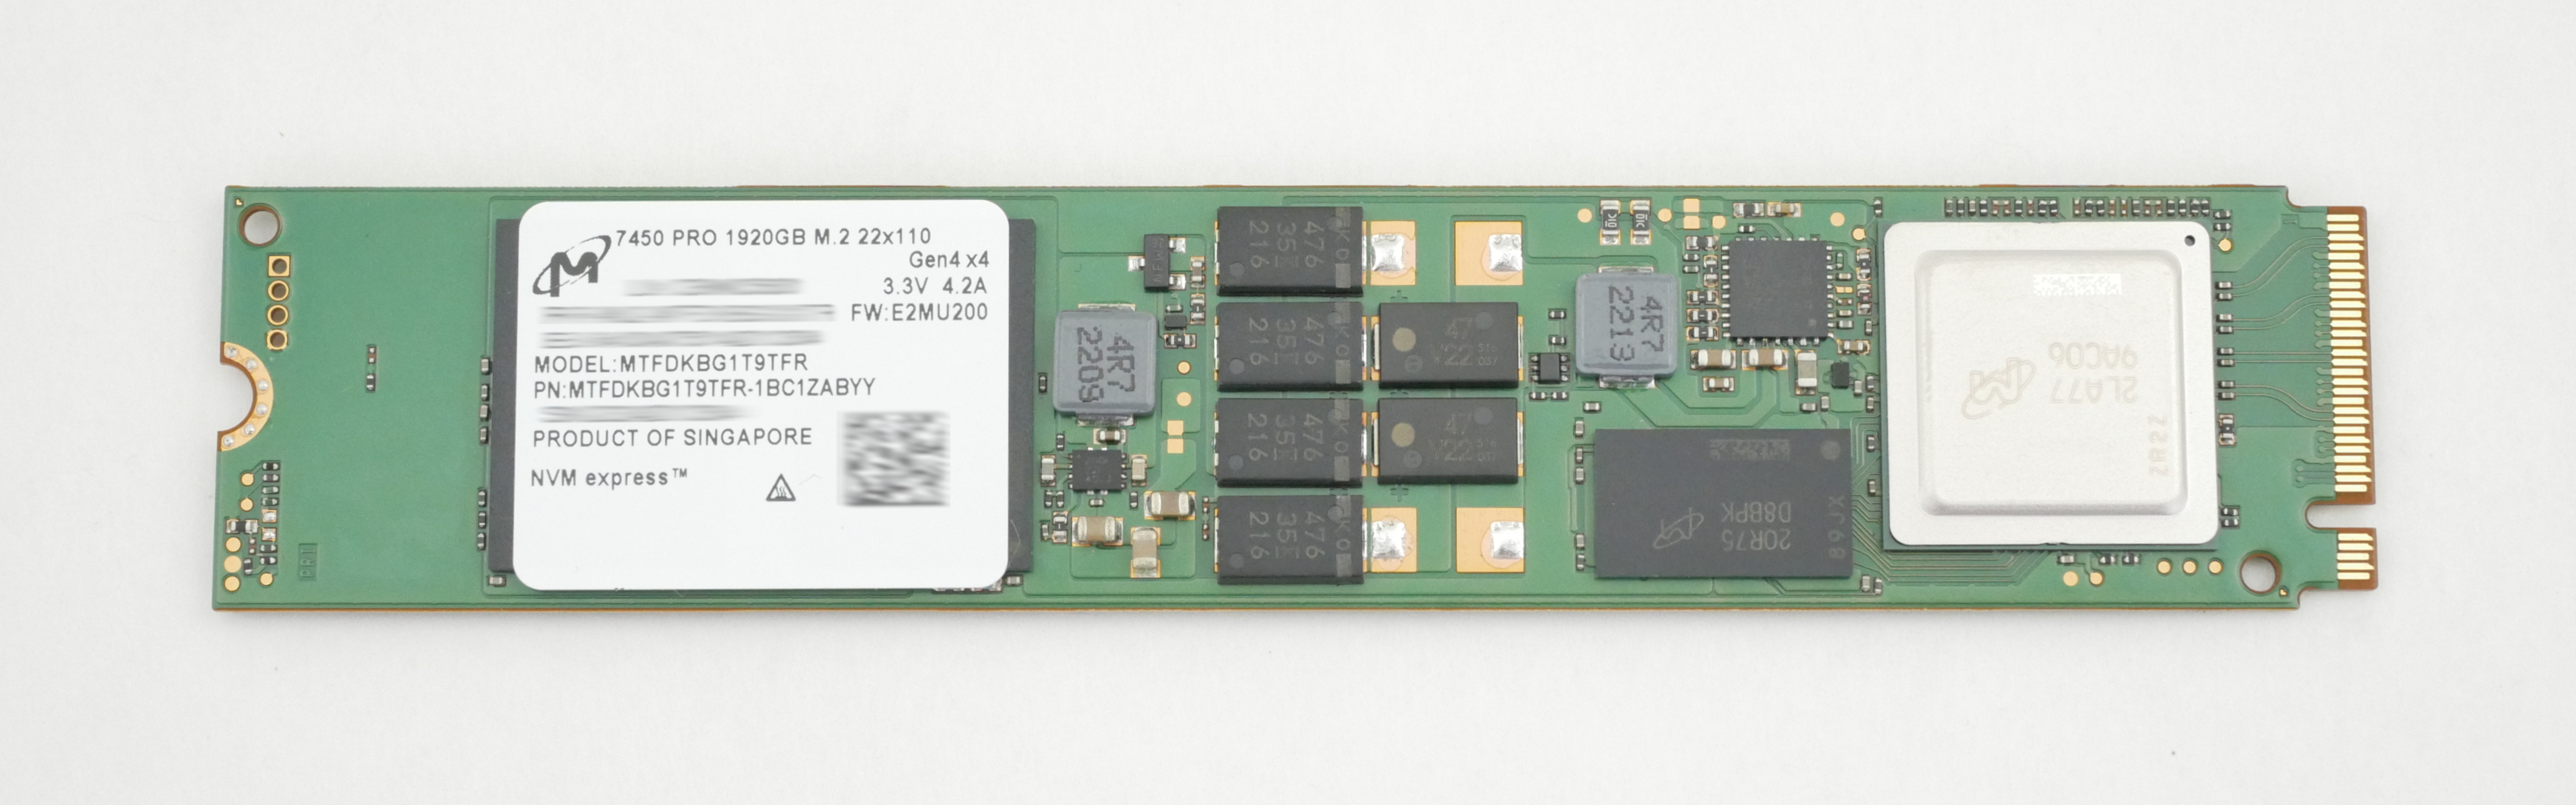 Micron 7450 Pro 1.92TB NVMe SSD 110mm PCI-E 4.0 Gen4 x4 MTFDKBG1T9TFR-1BC1ZABYY